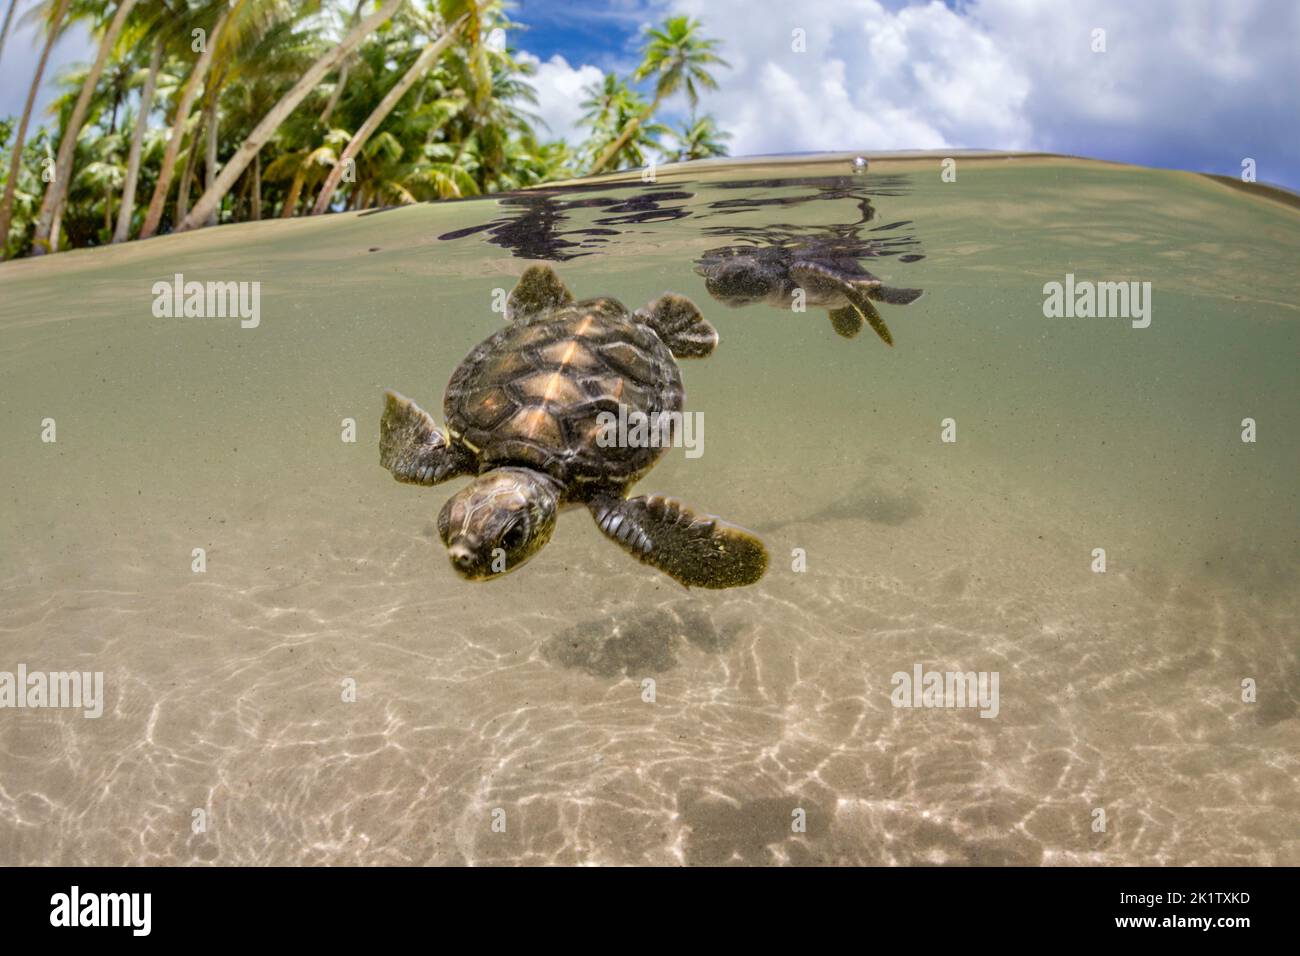 Una vista divisa di due tartarughe marine verdi appena schiusa, Chelonia mydas, una specie in via di estinzione, appena entrando nell'oceano al largo dell'isola di Yap, micron Foto Stock